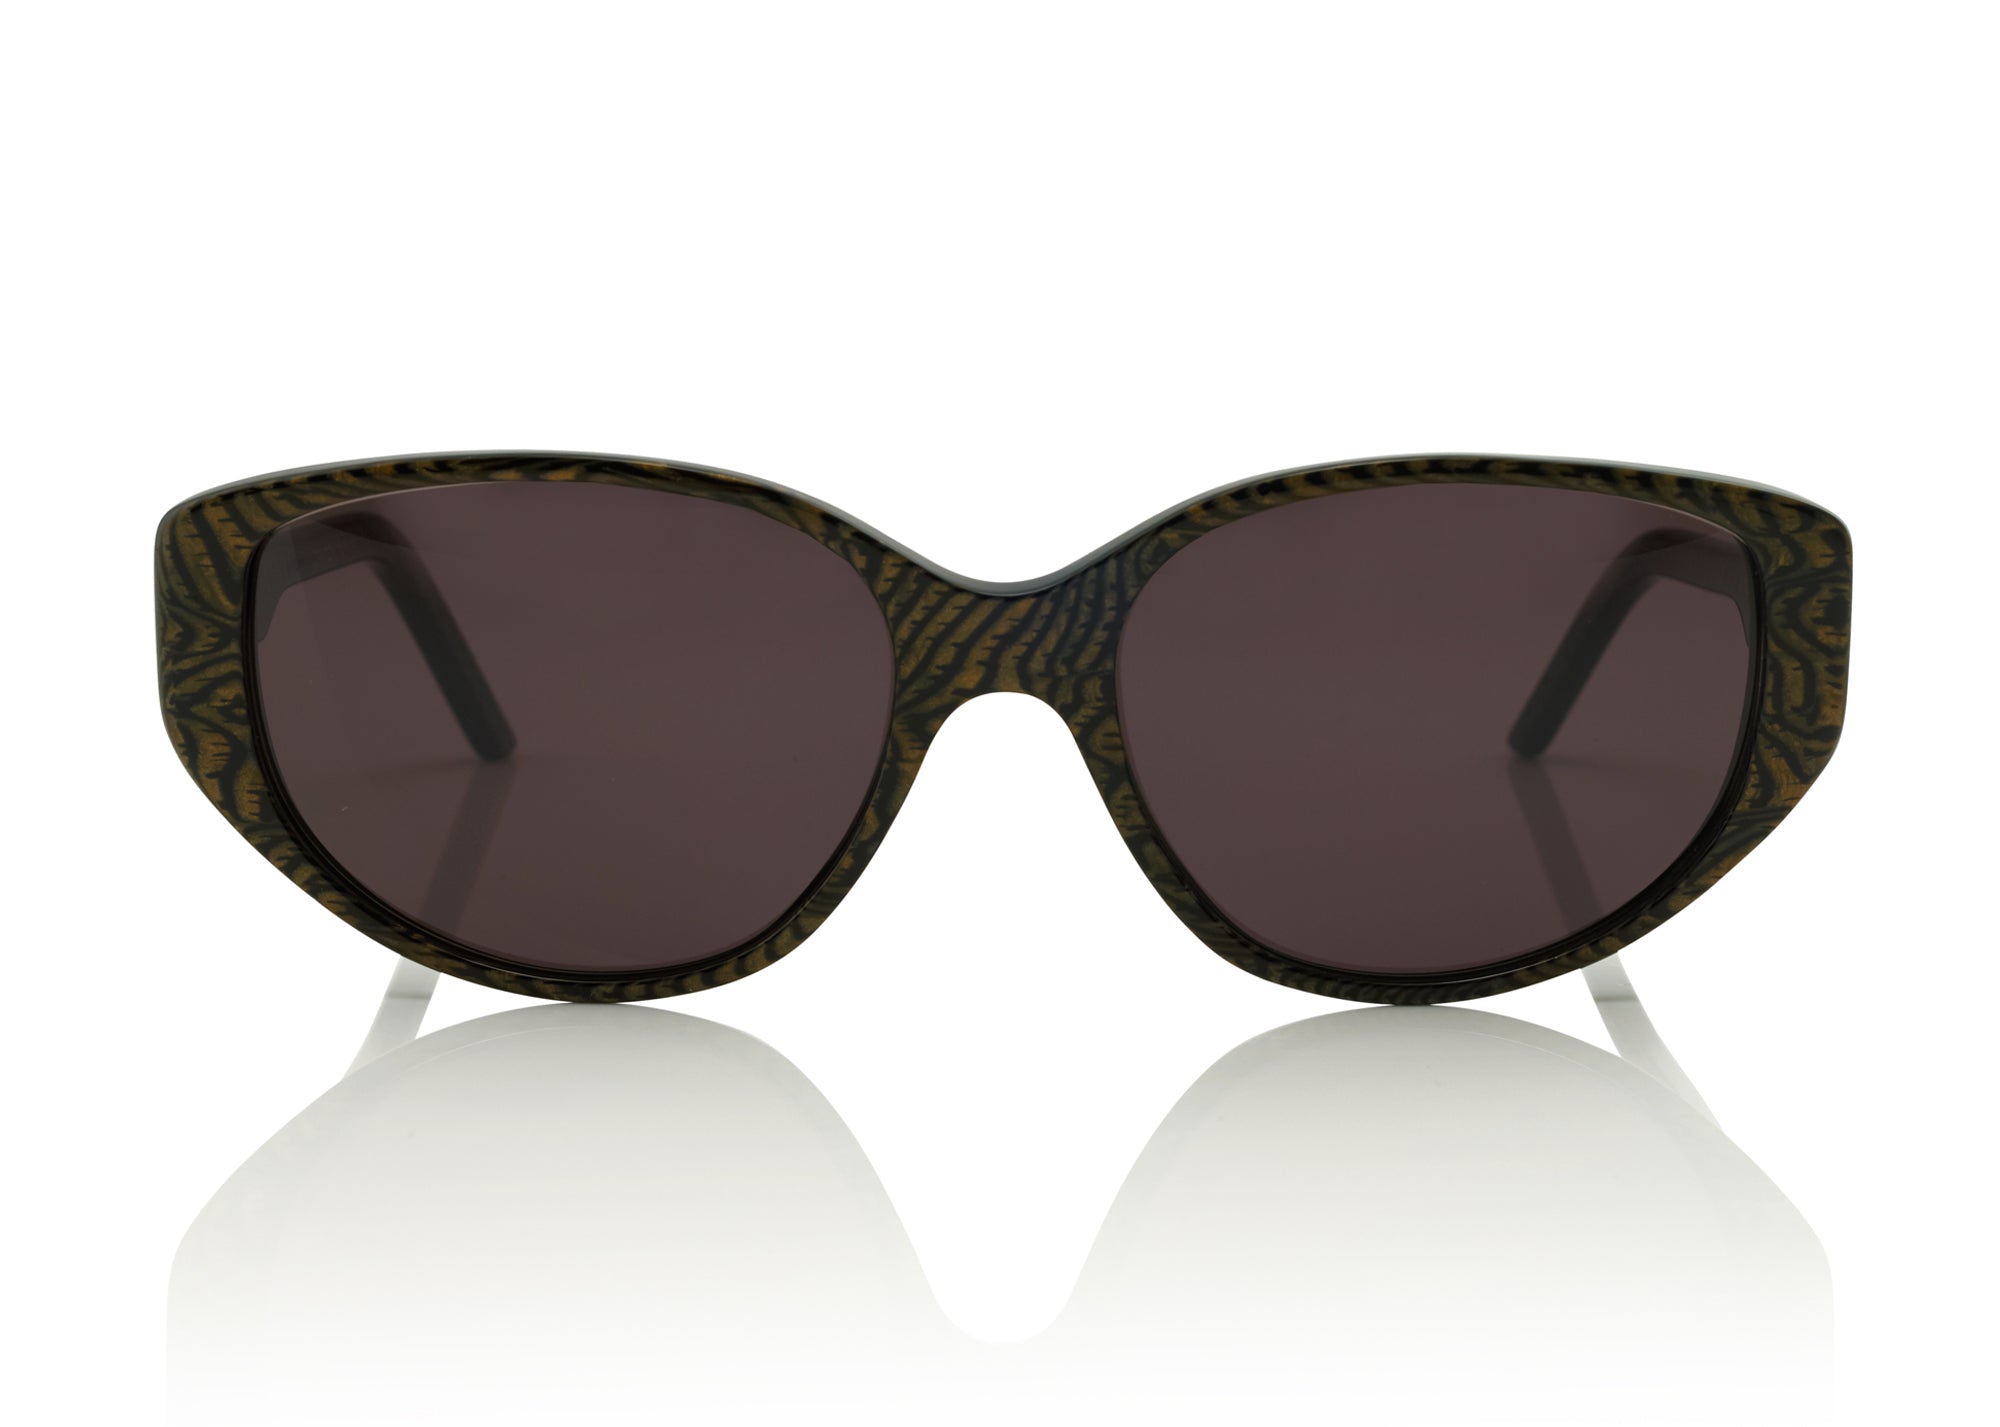 Fendi Gunmetal Metal/Acetate Cat Eye Low Profile Sunglasses